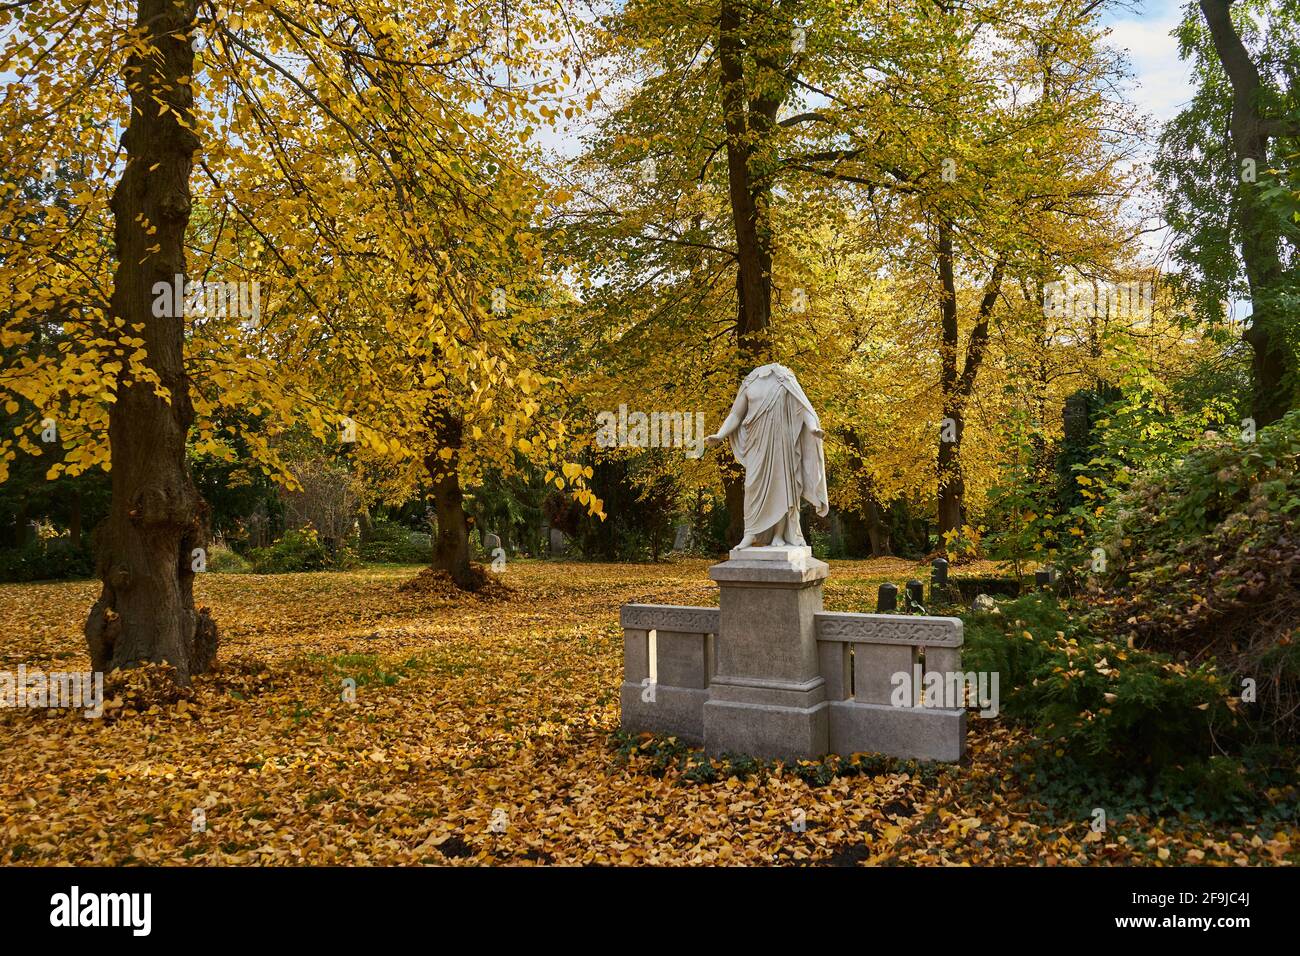 Grabmal mit beschädigter statue einer Frau, Frau ohne Kopf, Bäume im Herbstlaub, Luisenstädtischer Friedhof, Kreuzberg, Berlino, Germania Foto Stock